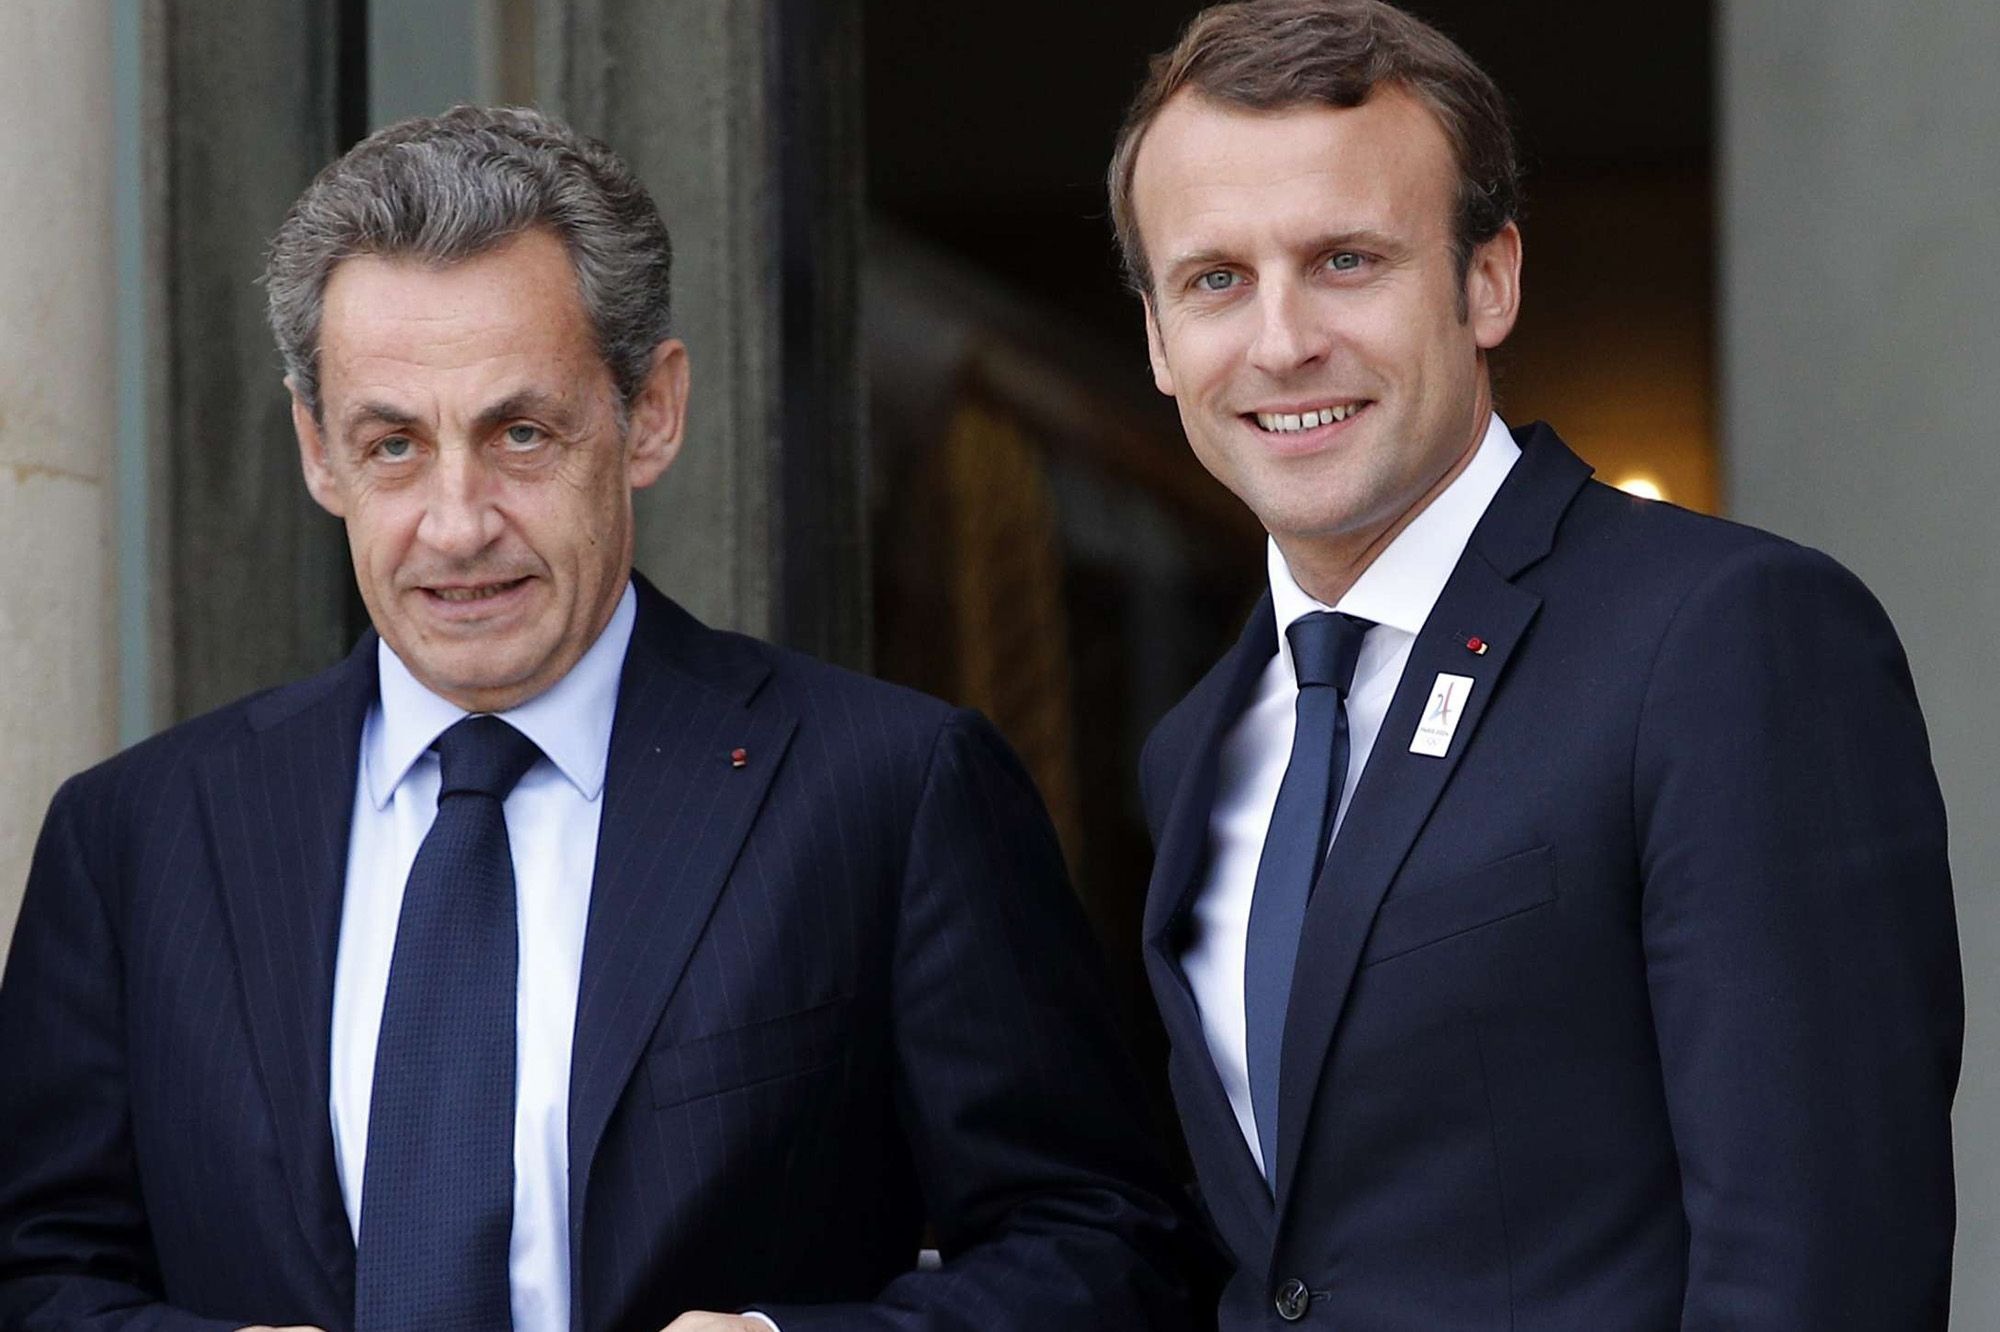 Présidentielle française:  Sarkozy annonce qu'il votera Macron au second tour